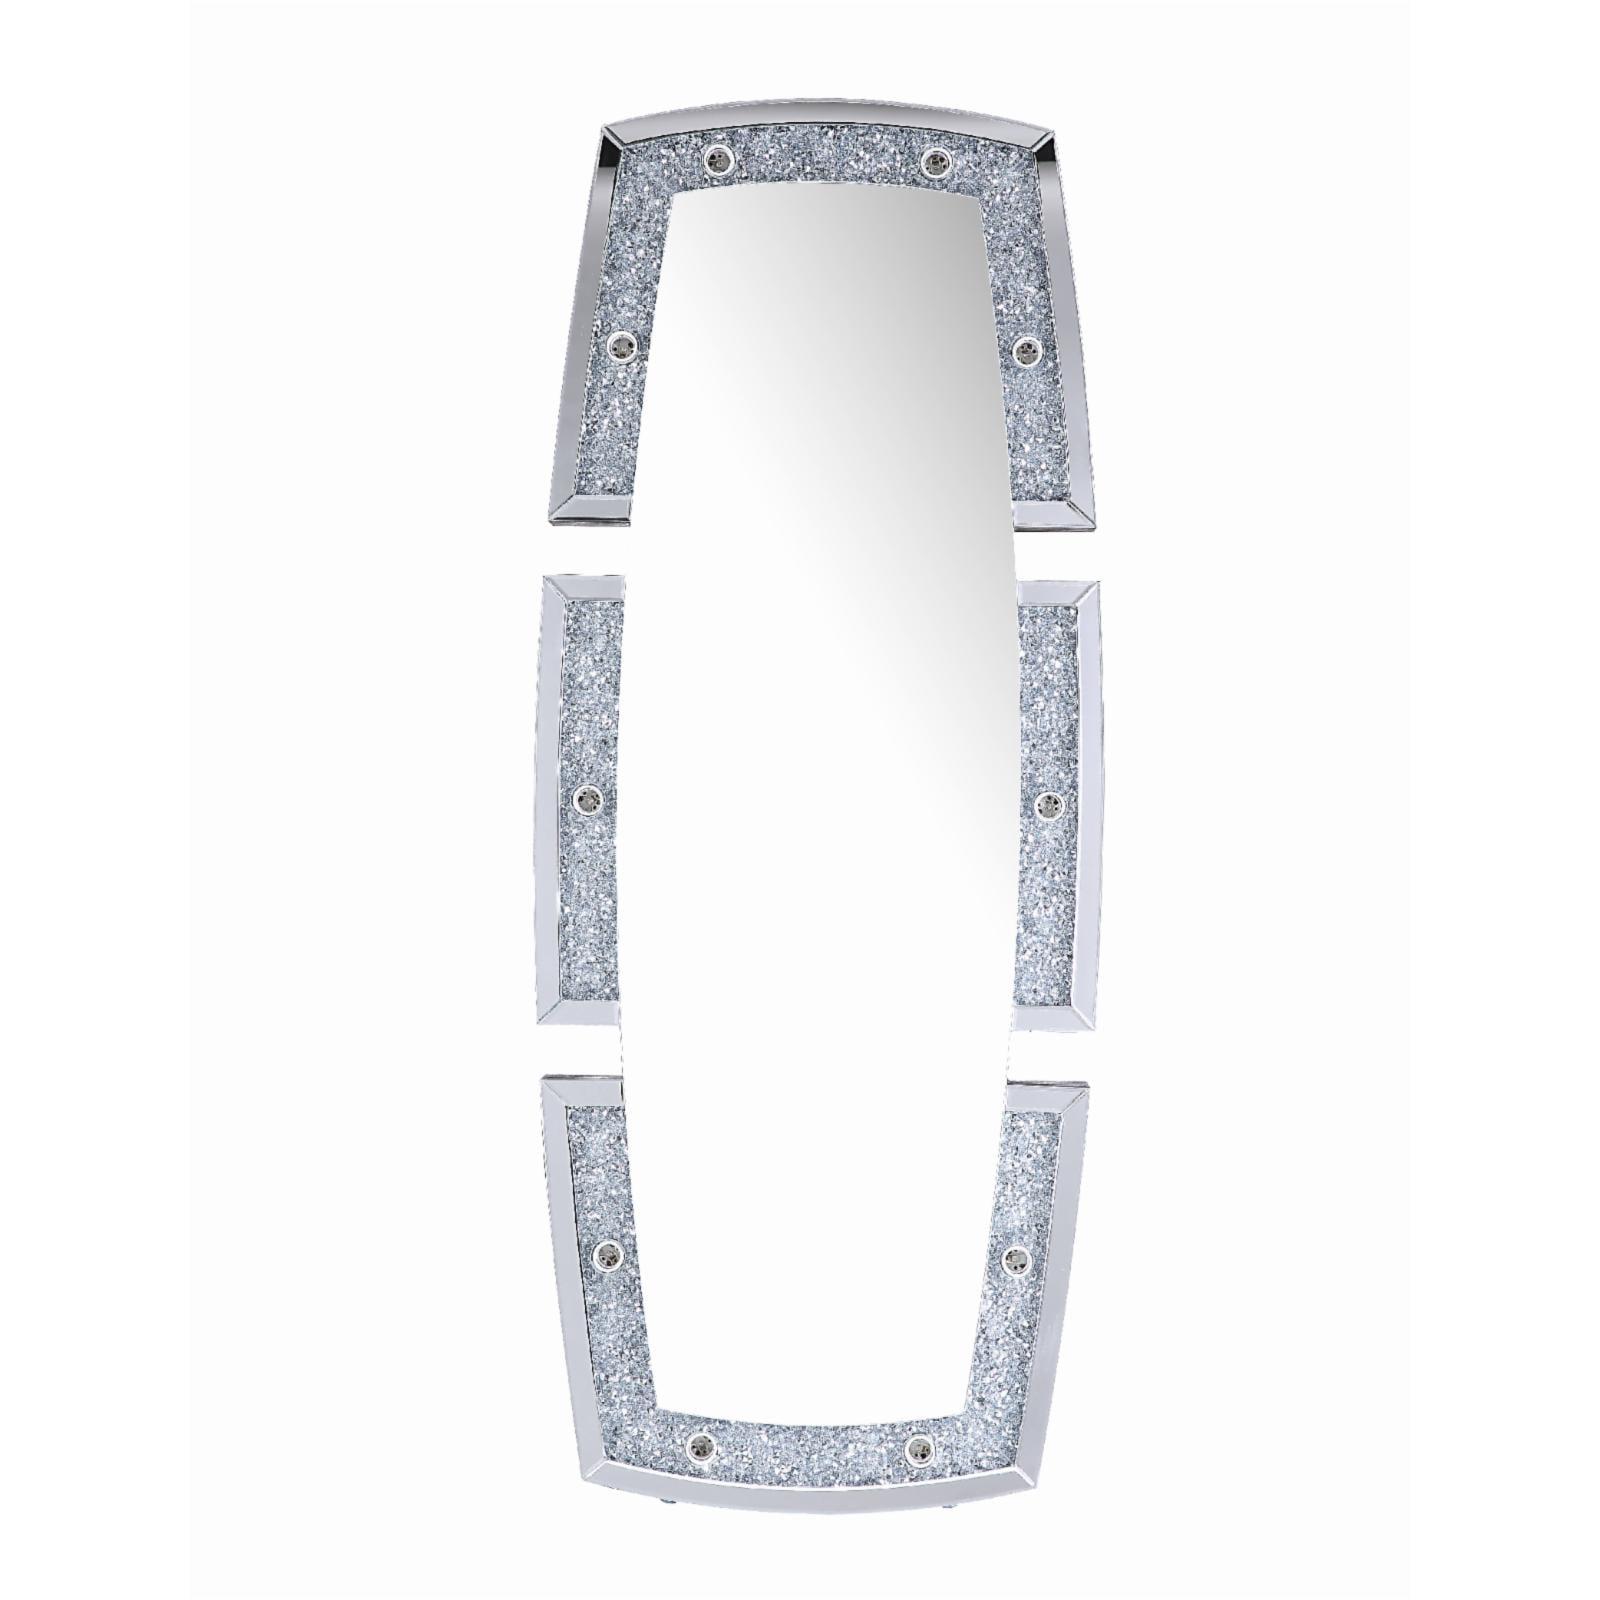 Full-Length Rectangular Wood Floor Mirror with LED Light